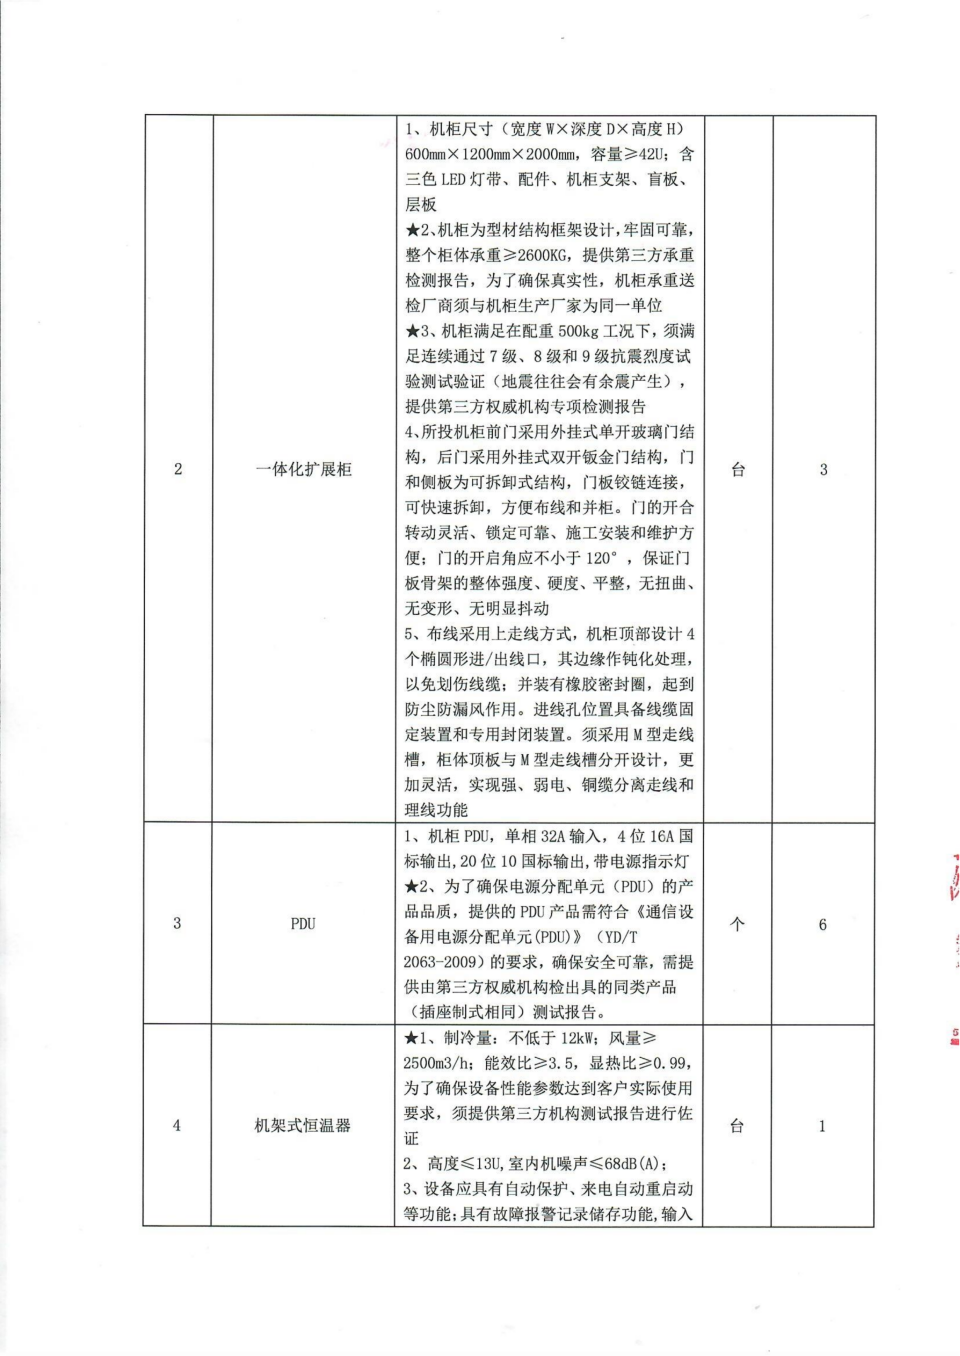 四川省文物考古研究院机房改造项目比选公告_02.png